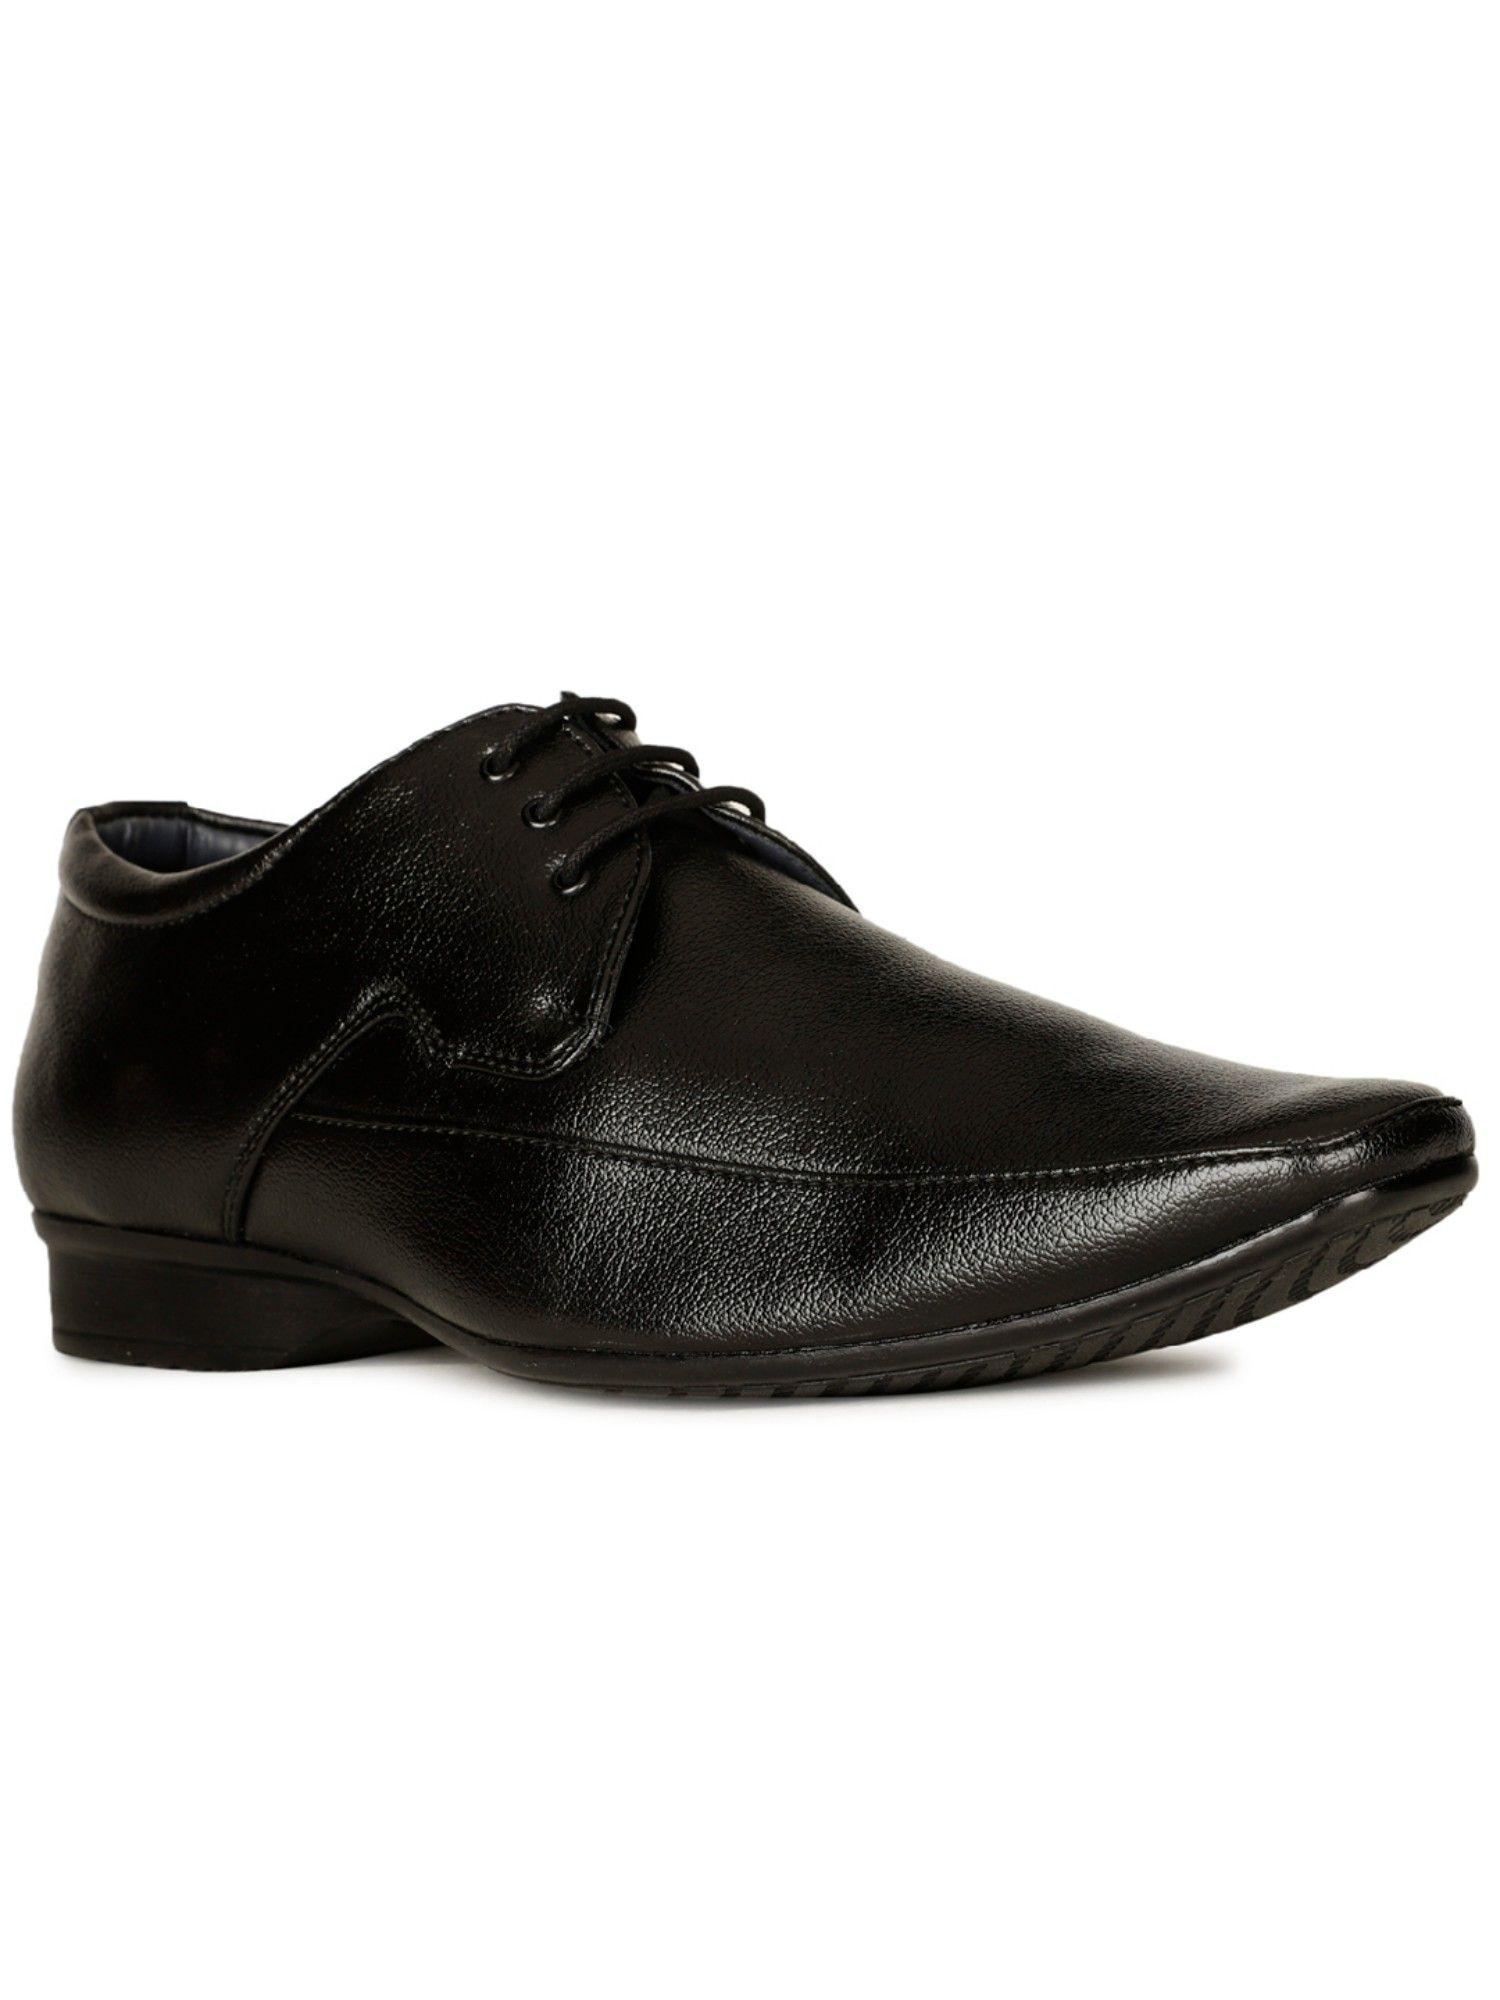 men-lace-up-formal-shoes